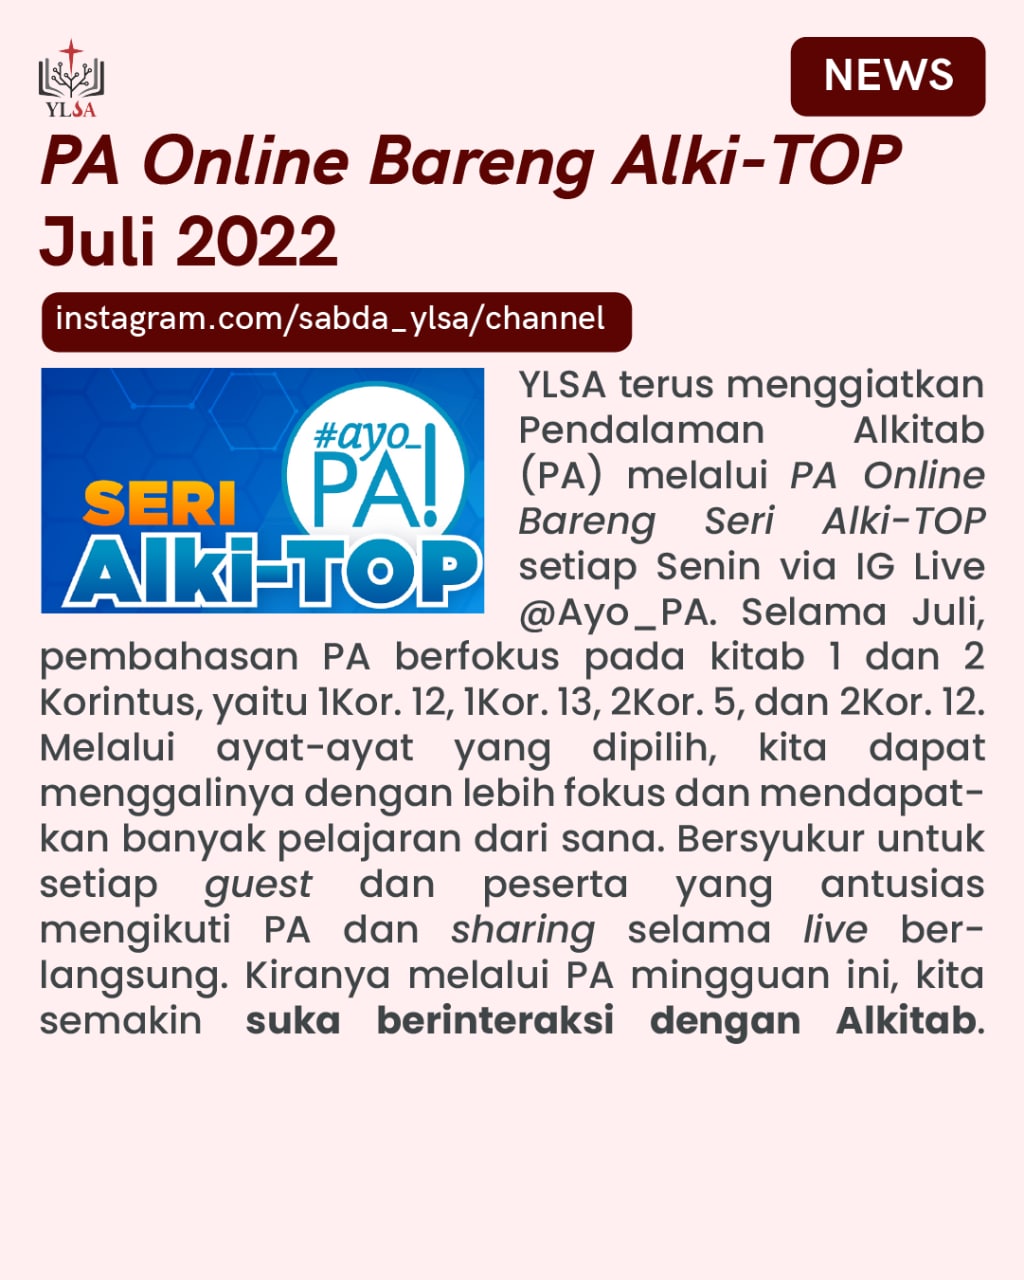 YLSA terus menggiatkan PA Online Bareng Seri Alki-TOP setiap Senin via IG Live @Ayo_PA.